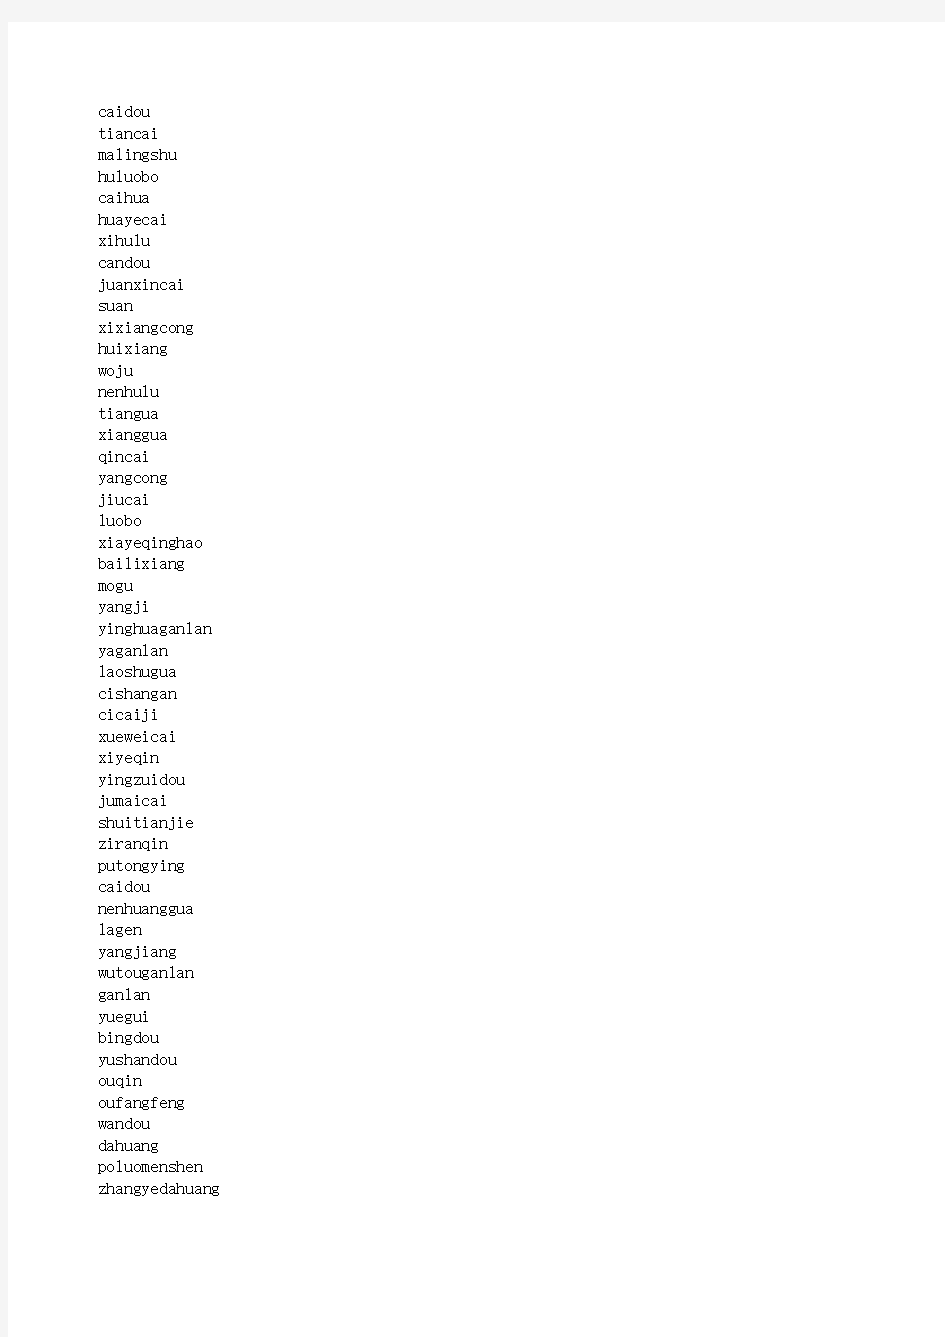 最全200多种水果蔬菜拼音列表大合集